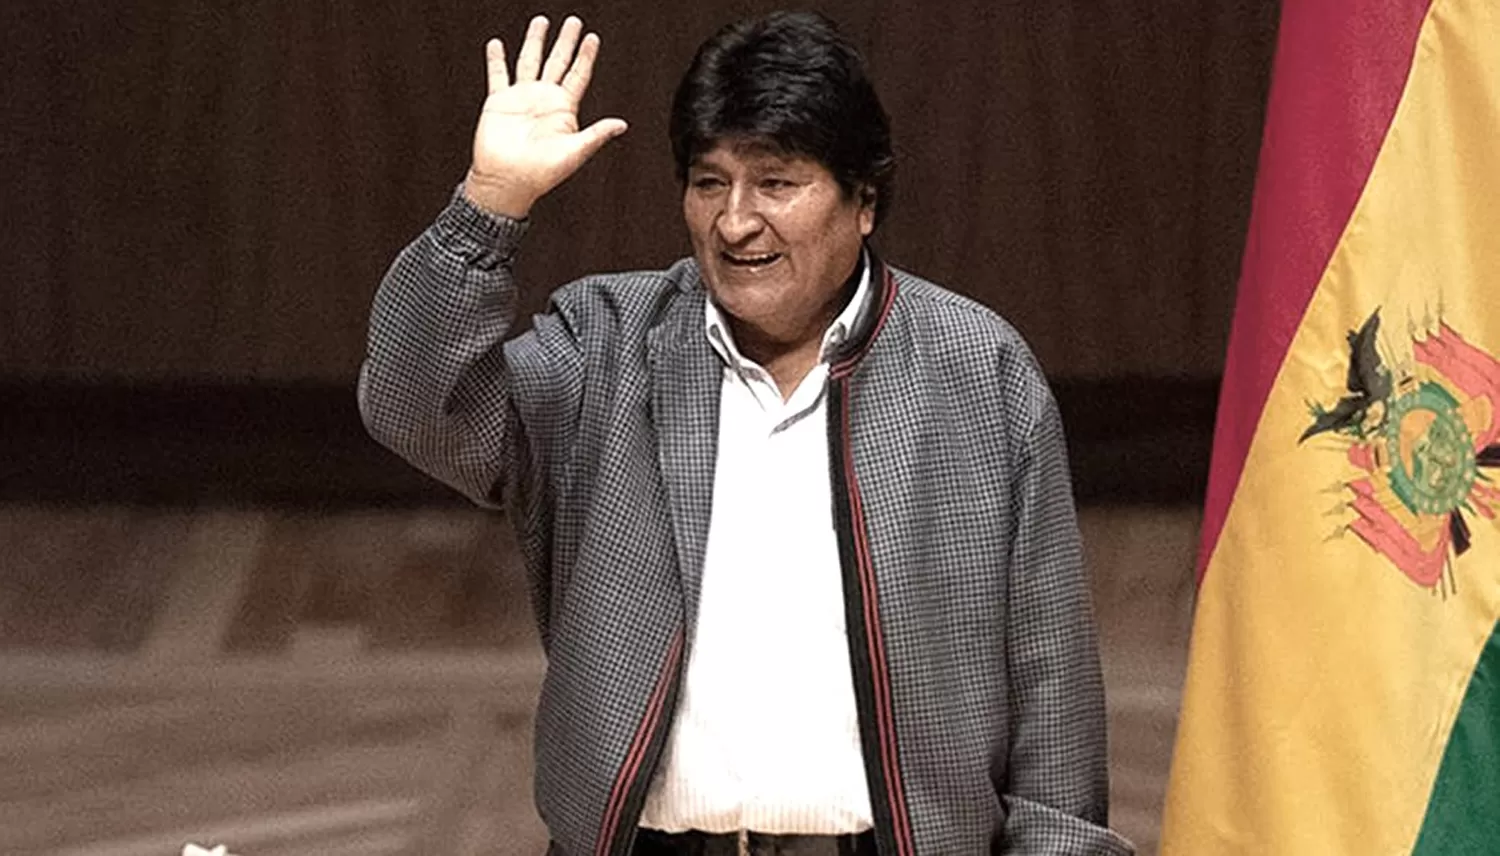 Volveremos pronto, el mensaje de Evo Morales a los bolivianos